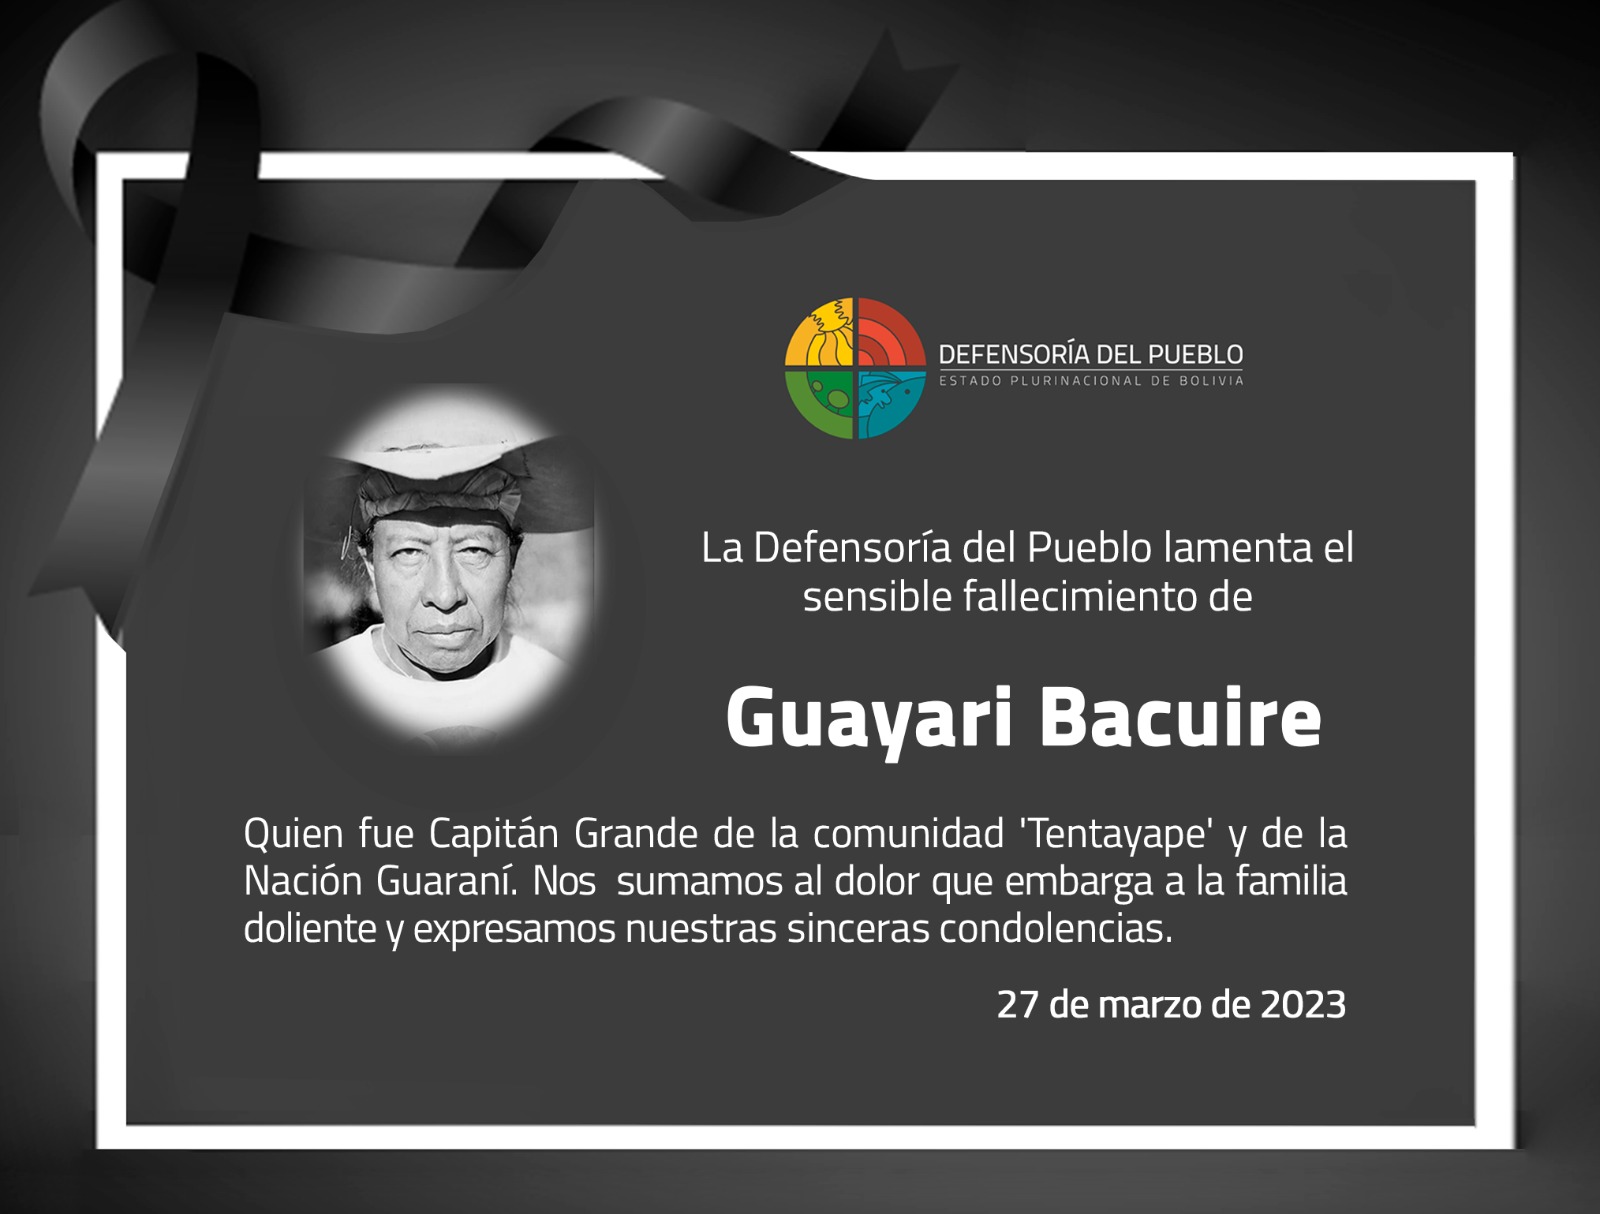 Defensor del Pueblo lamenta el fallecimiento del líder indígena, Guayari Bacuire, promotor de la defensa de los derechos del pueblo guaraní